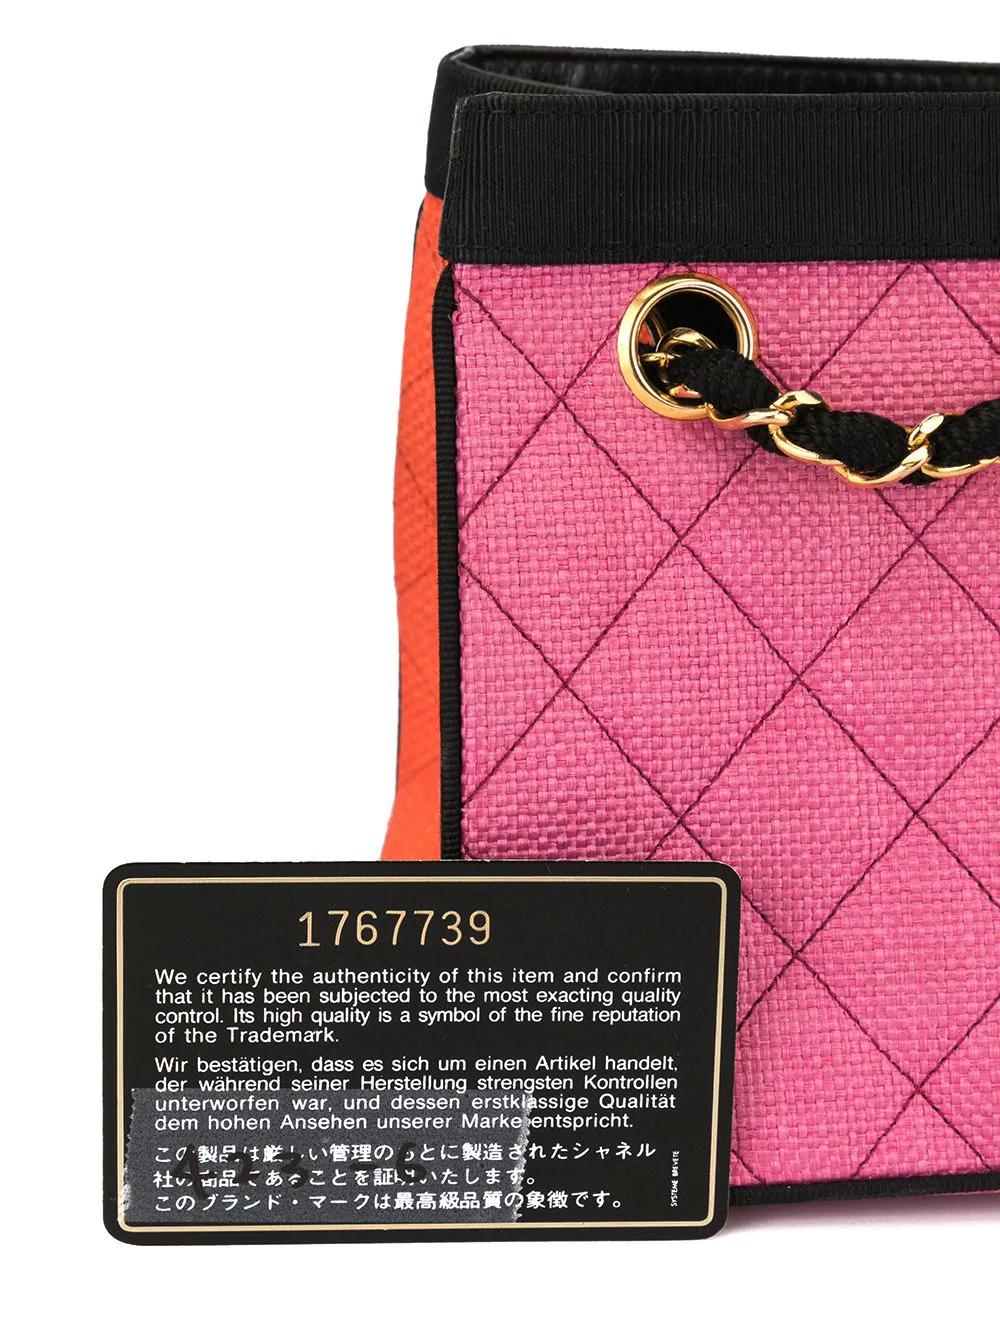 Chanel 1991 Multicolor Mini Vintage Tote Bag Rare Pink Orange Black Straw Tote For Sale 9